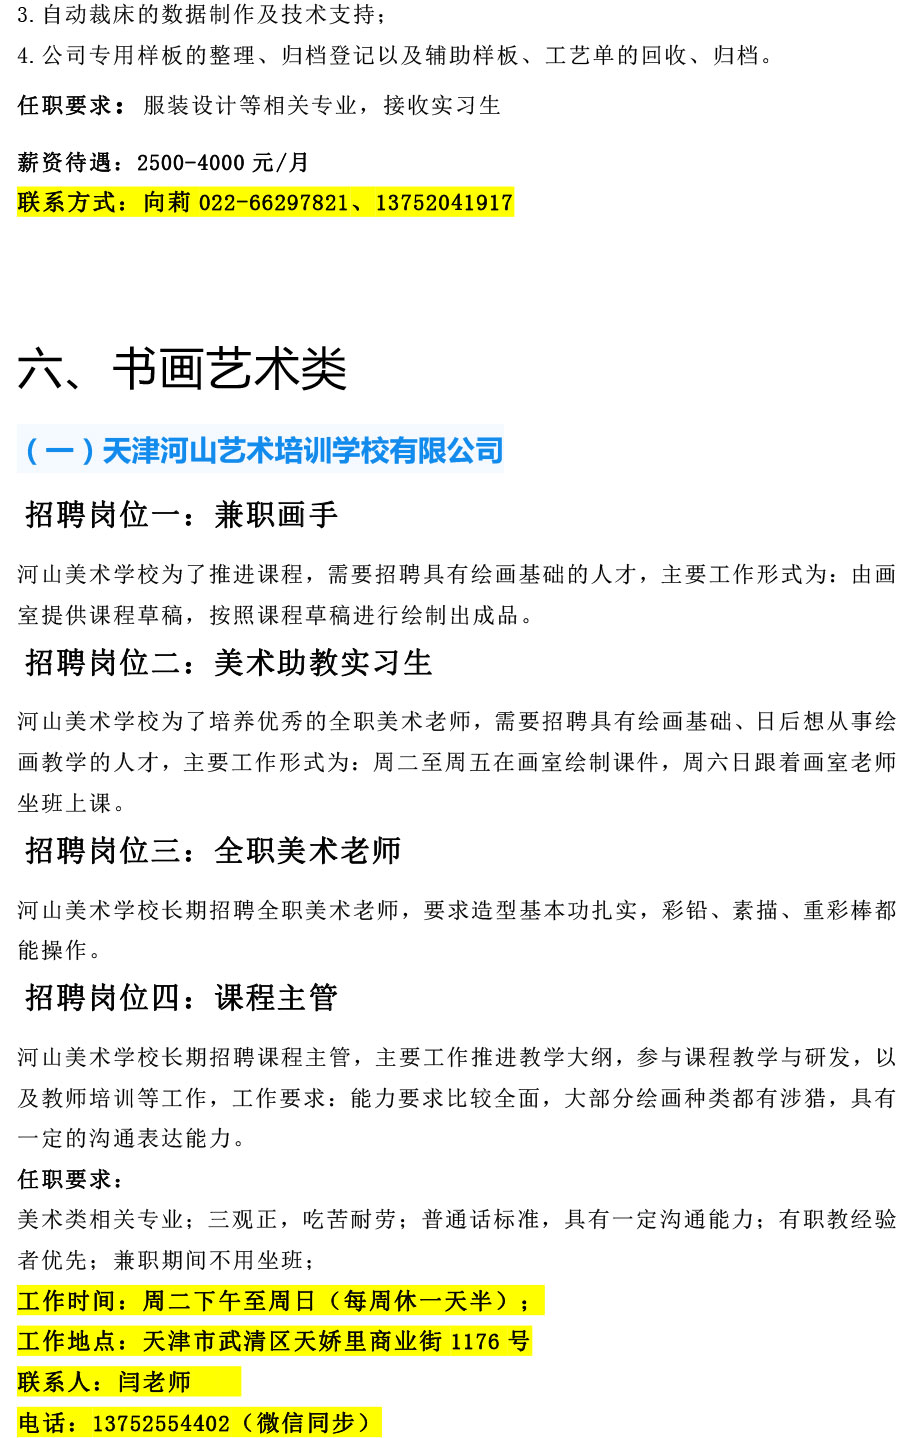 天津工艺美术职业天下足球网2021年12月招聘信息-8.jpg